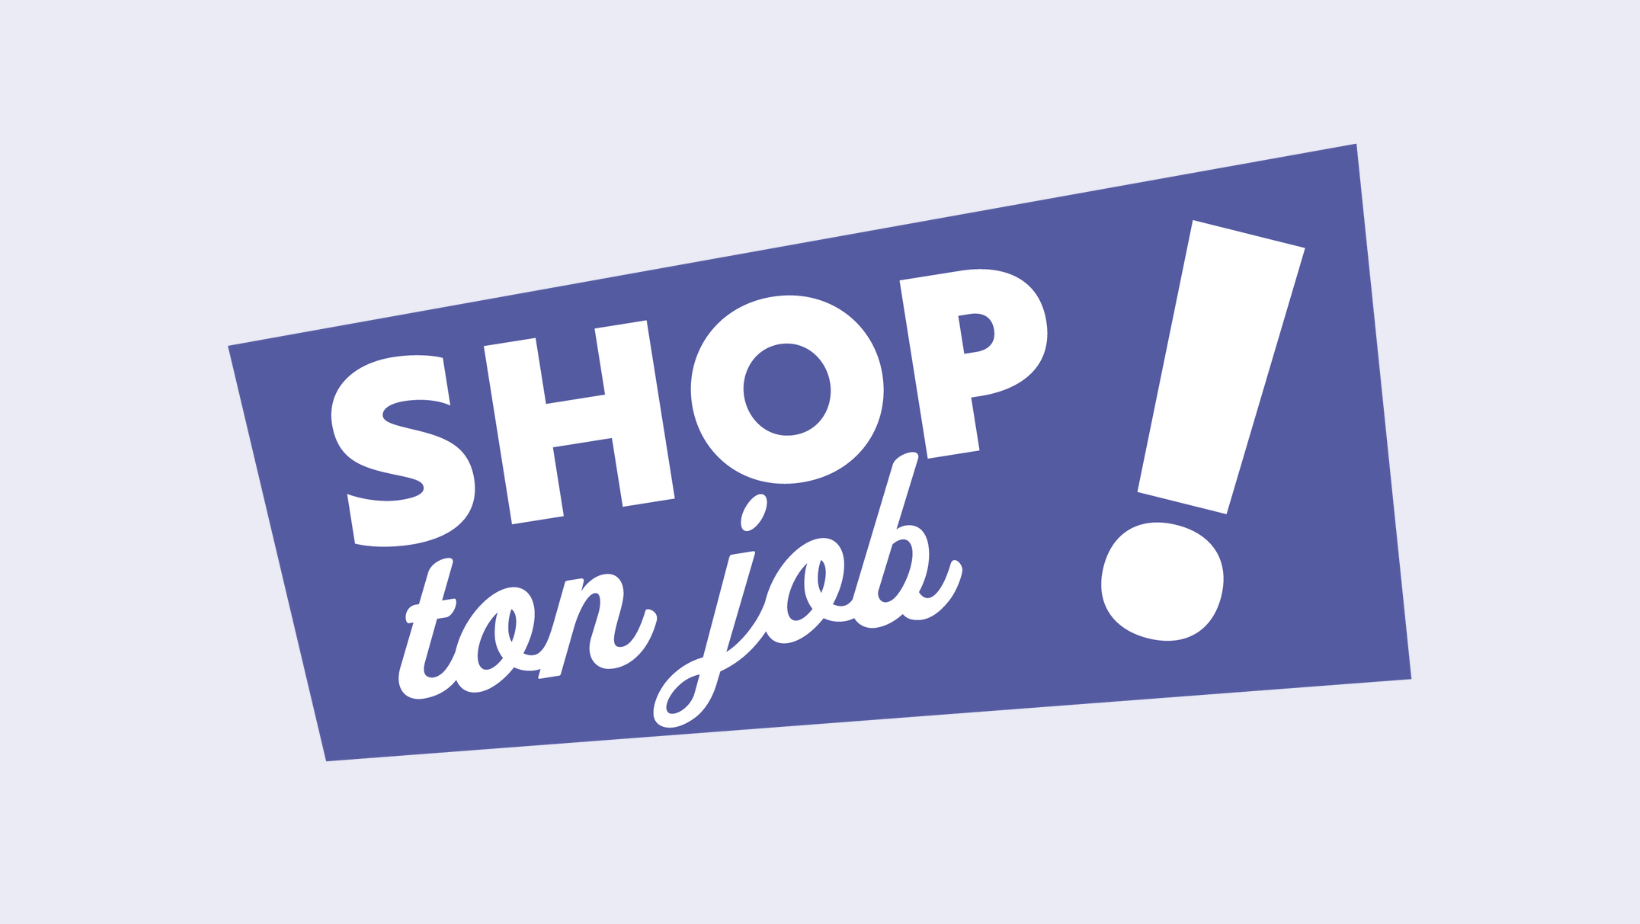 Shop ton job : Un nouveau concept pour trouver un emploi